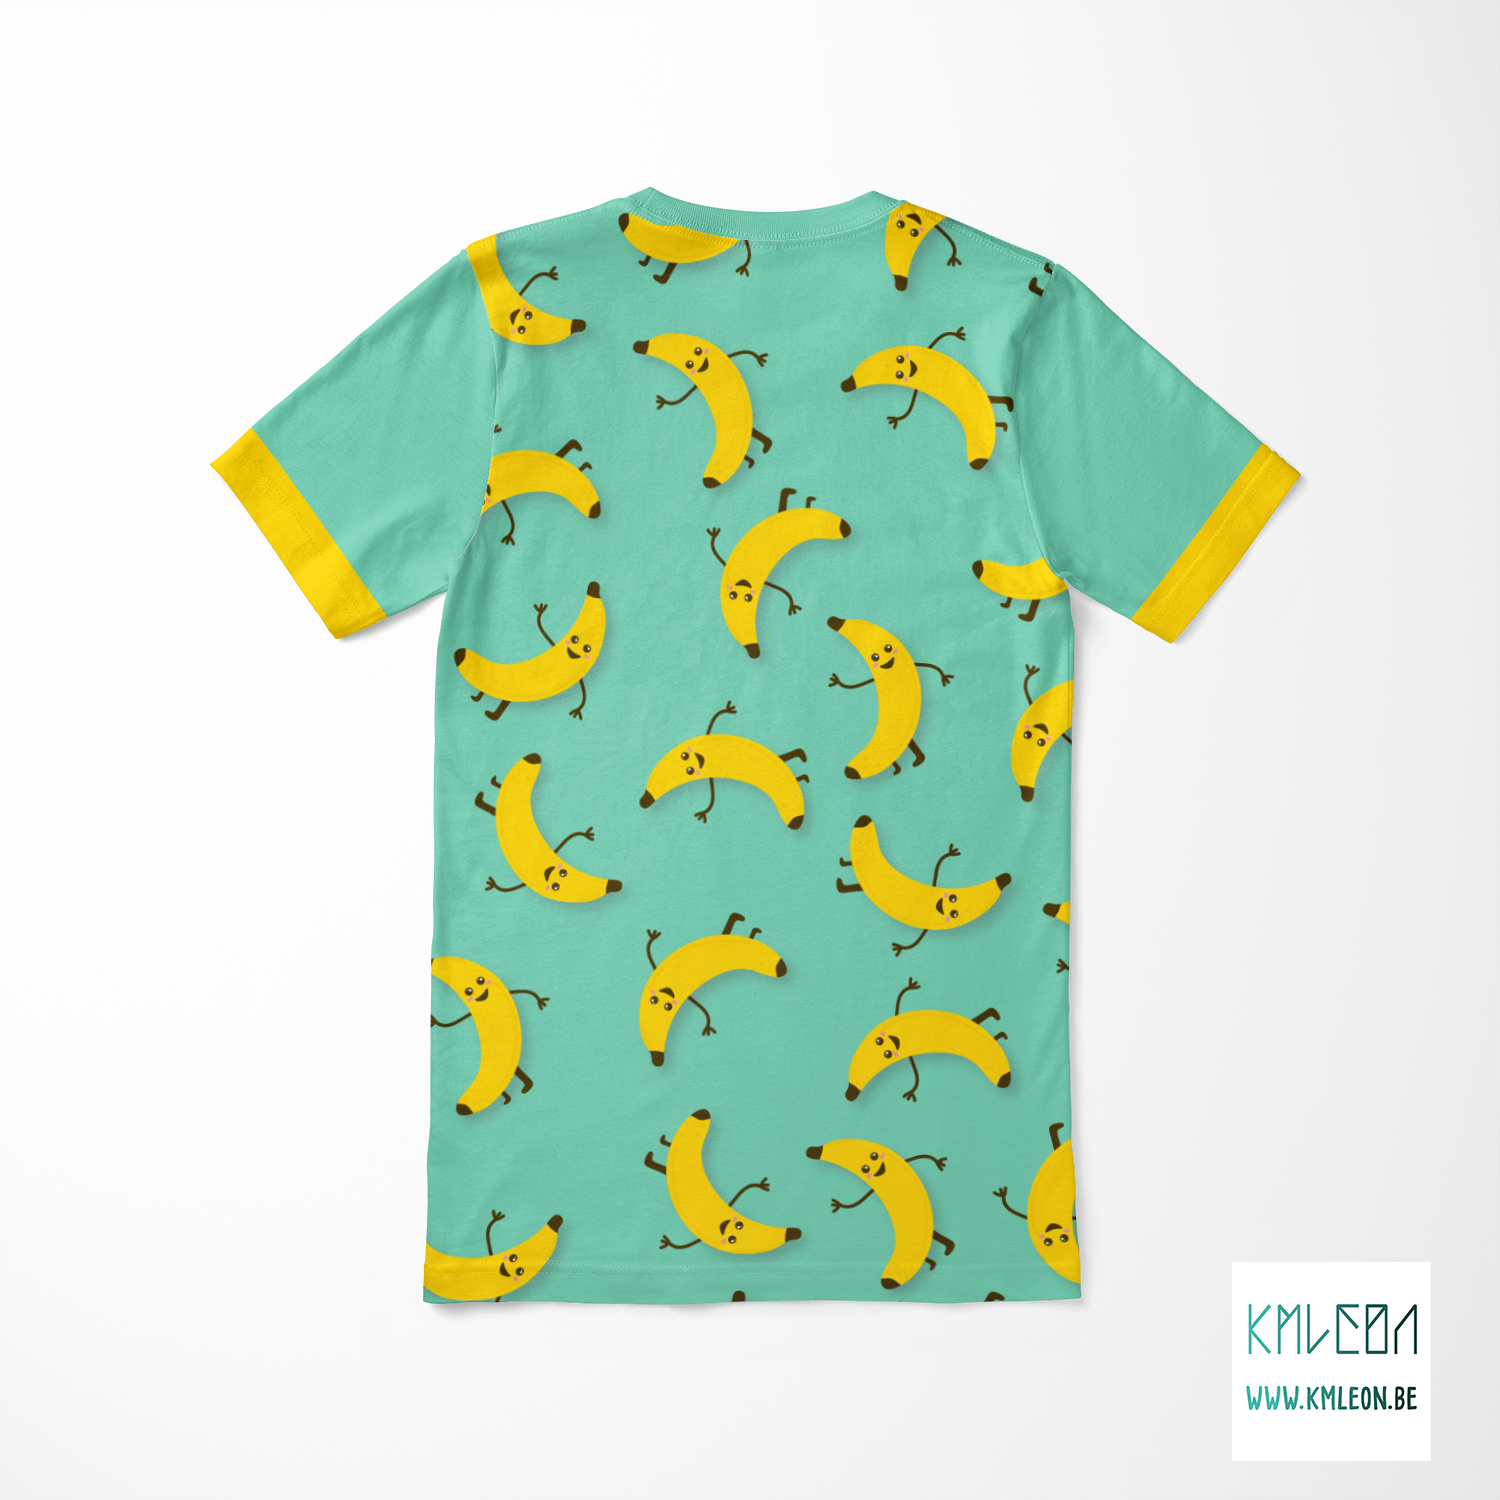 Bananas cut and sew t-shirt